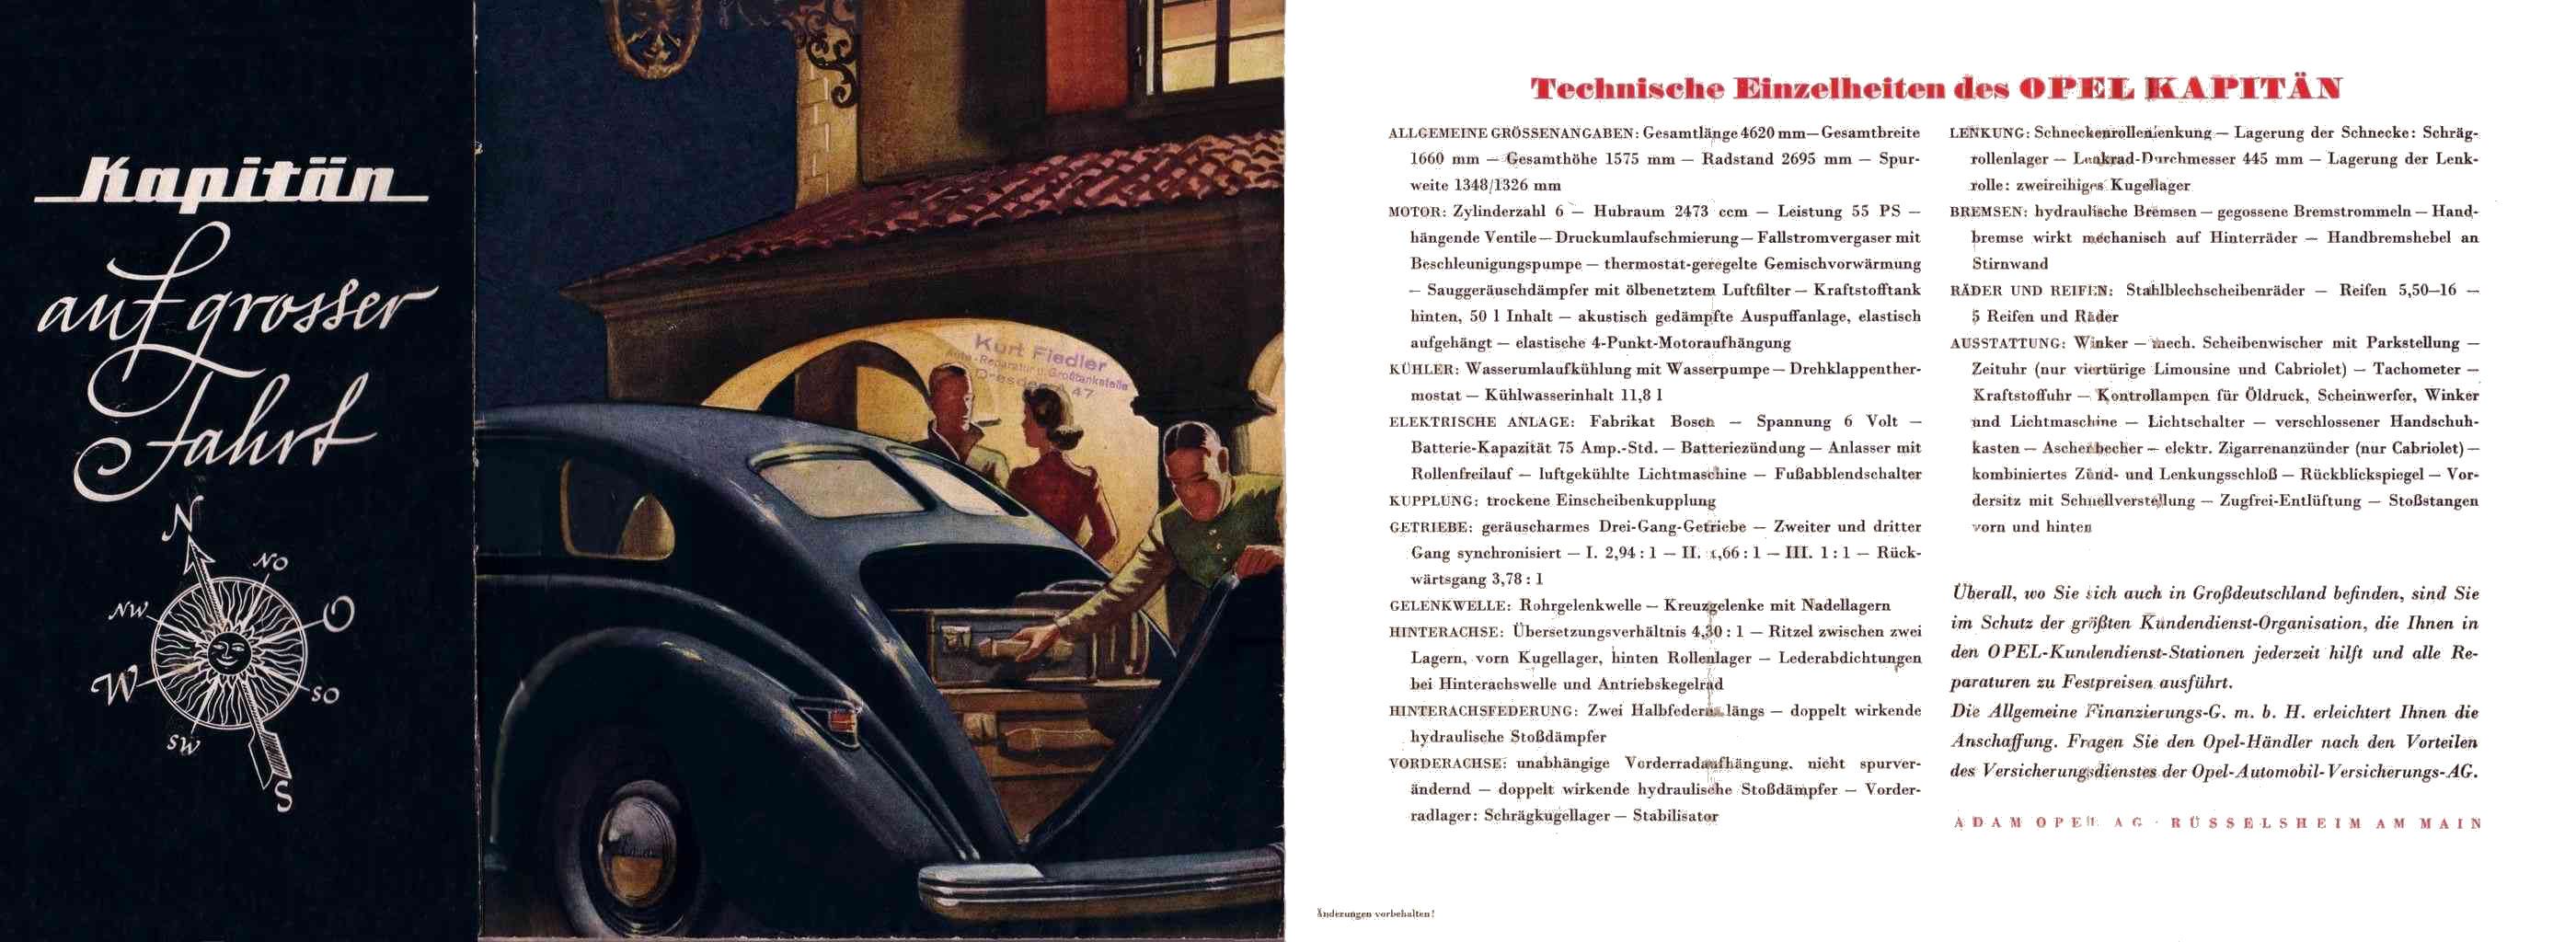 1939 Opel brochure